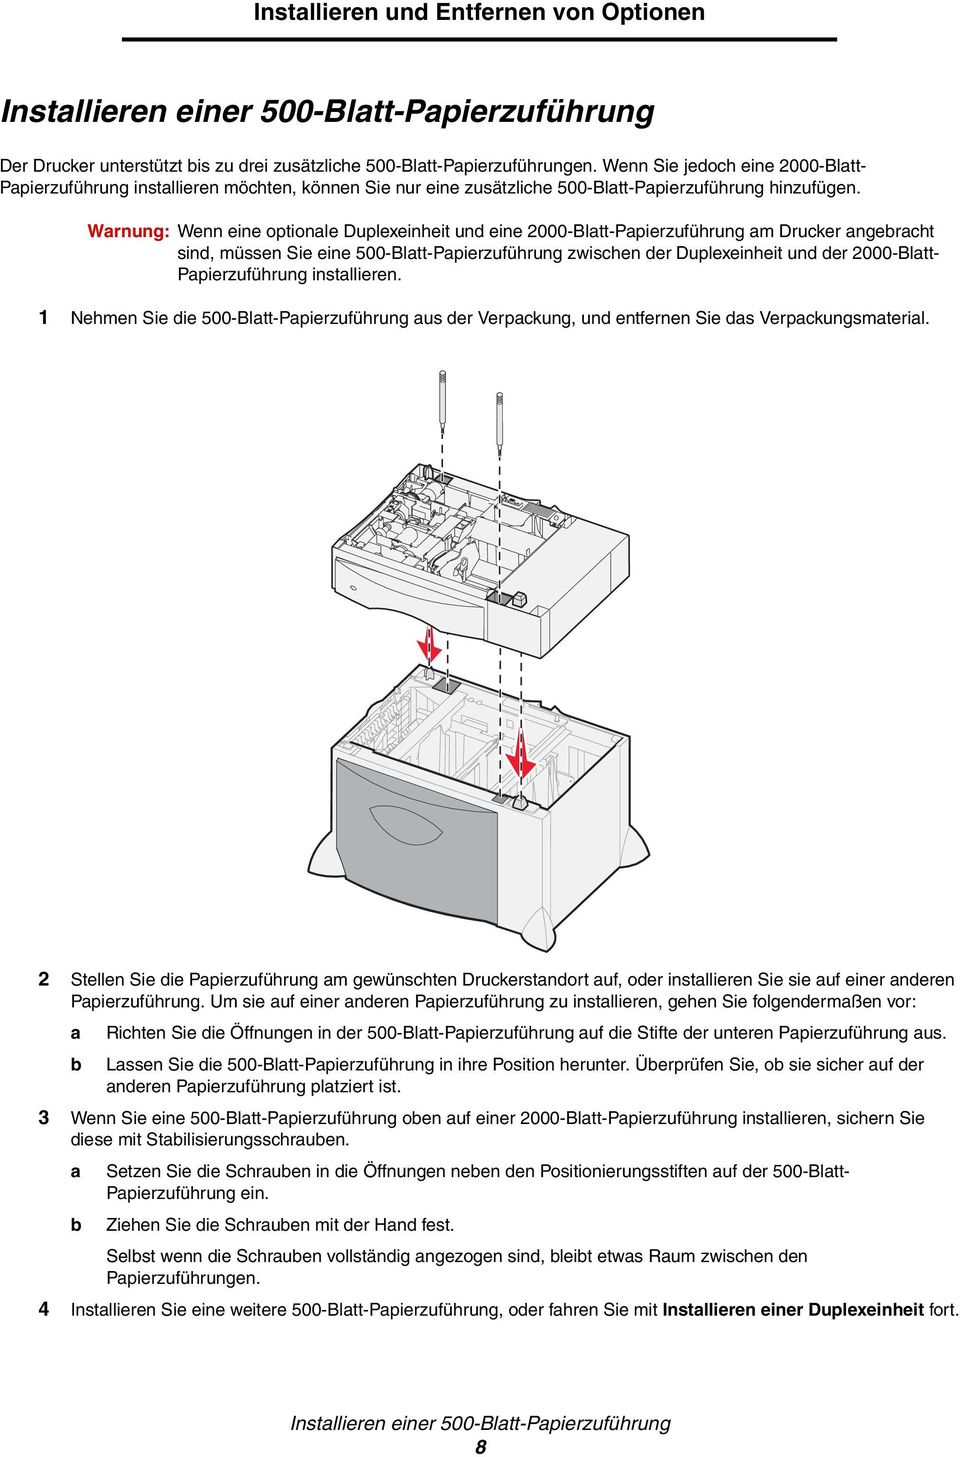 Warnung: Wenn eine optionale Duplexeinheit und eine 2000-Blatt-Papierzuführung am Drucker angebracht sind, müssen Sie eine 500-Blatt-Papierzuführung zwischen der Duplexeinheit und der 2000-Blatt-